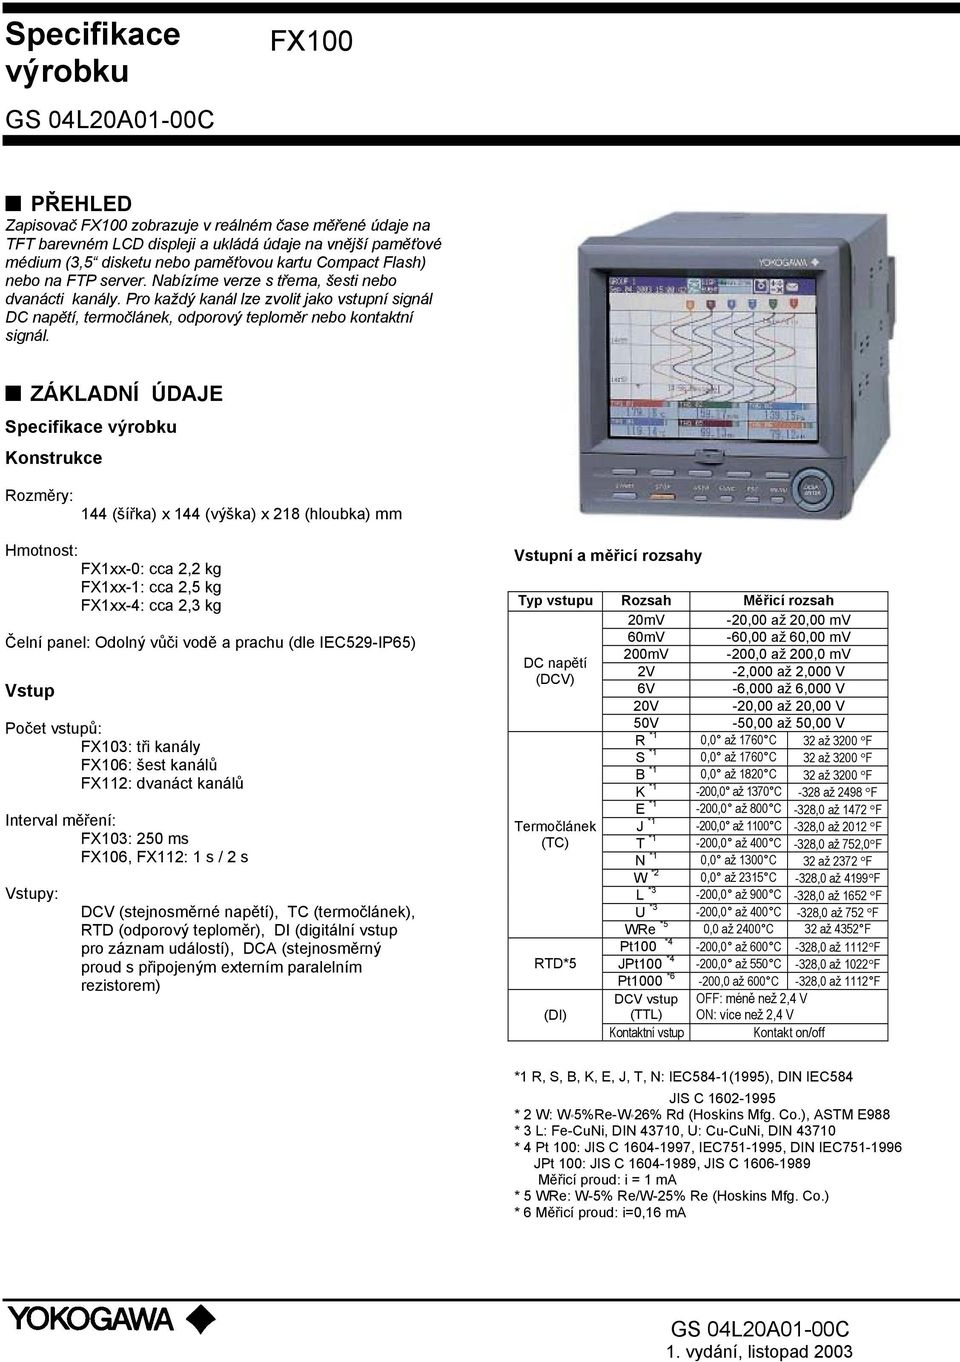 ZÁKLADNÍ ÚDAJE Specifikace výrobku Konstrukce Rozměry: 144 (šířka) x 144 (výška) x 218 (hloubka) mm Hmotnost: FX1xx-0: cca 2,2 kg FX1xx-1: cca 2,5 kg FX1xx-4: cca 2,3 kg Čelní panel: Odolný vůči vodě